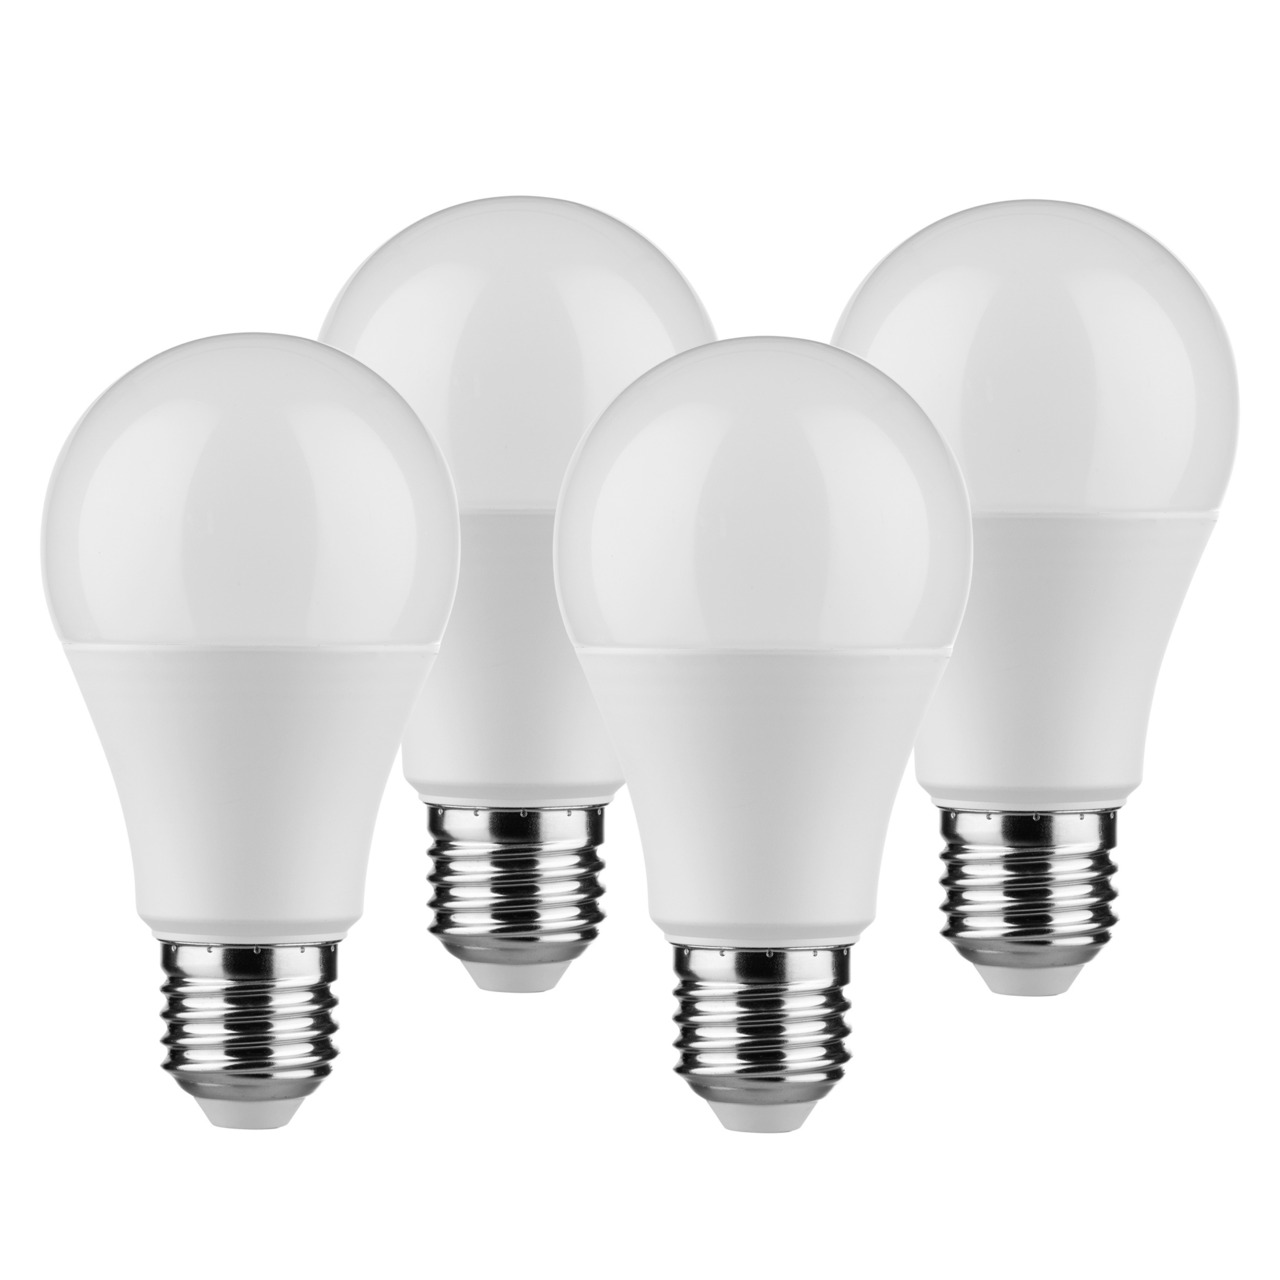 Müller Licht 4er-Pack 9-W-LED-Lampen E27- warmweiss- 806 lm